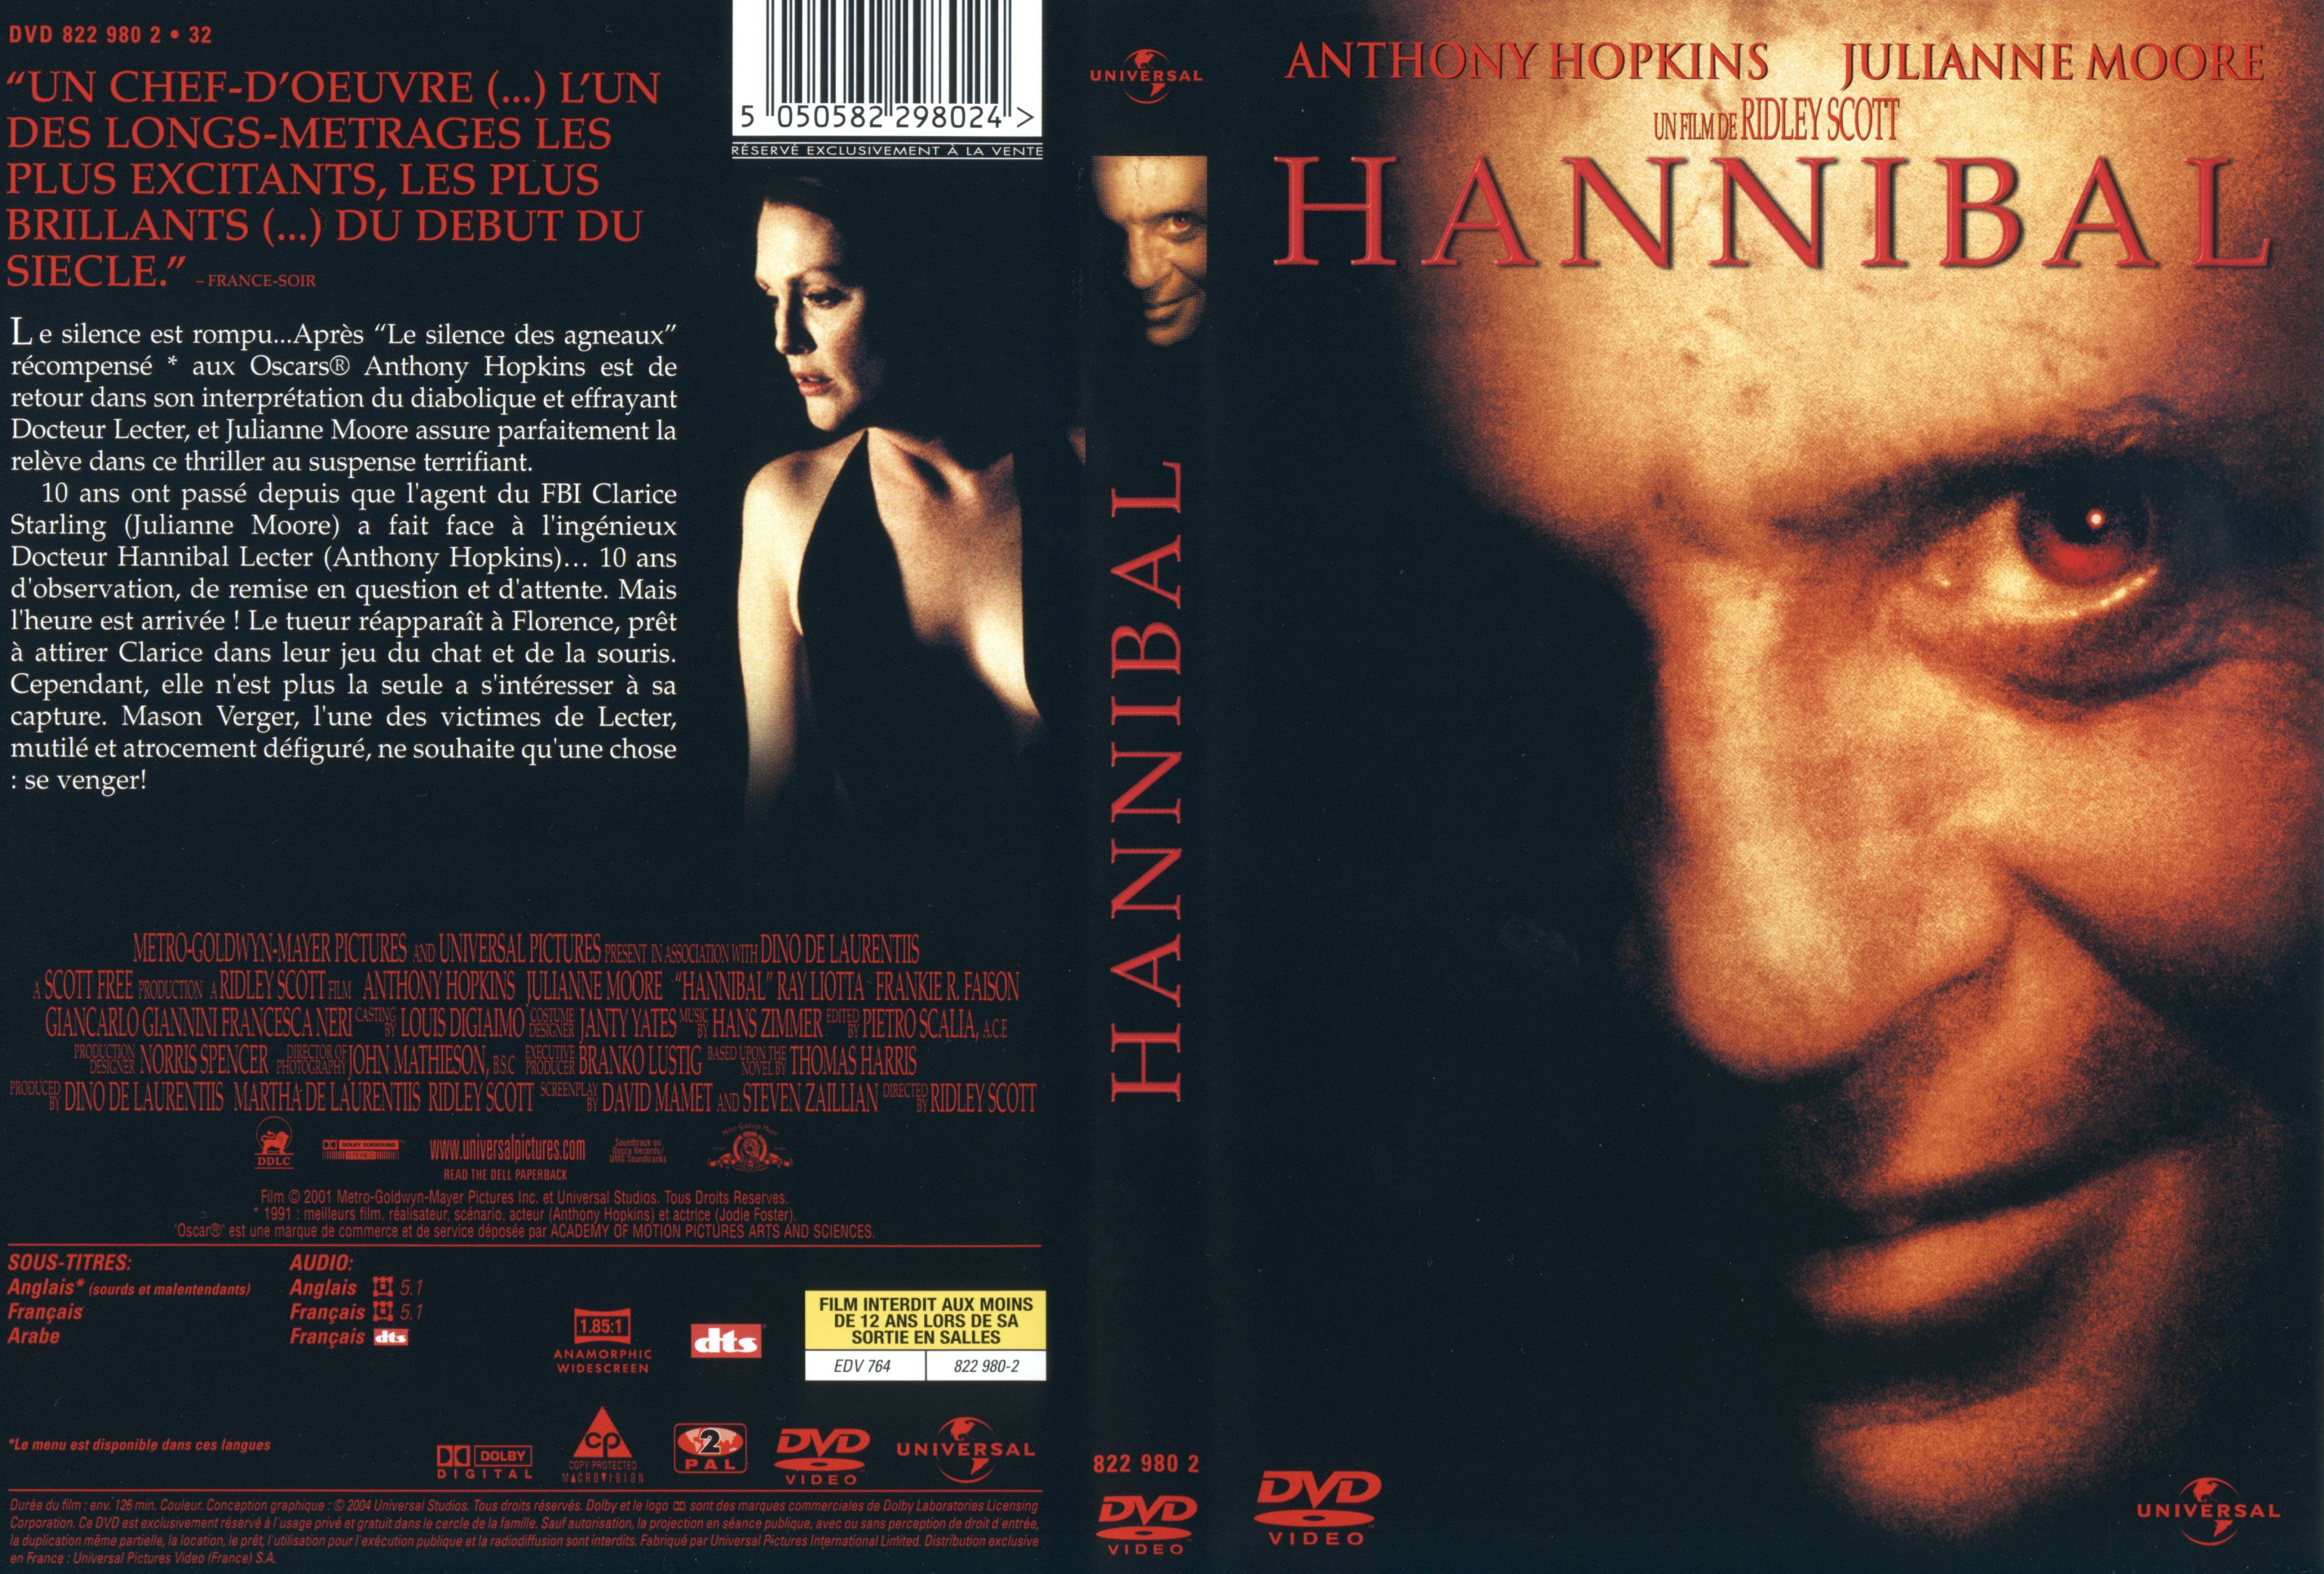 Jaquette DVD Hannibal v2